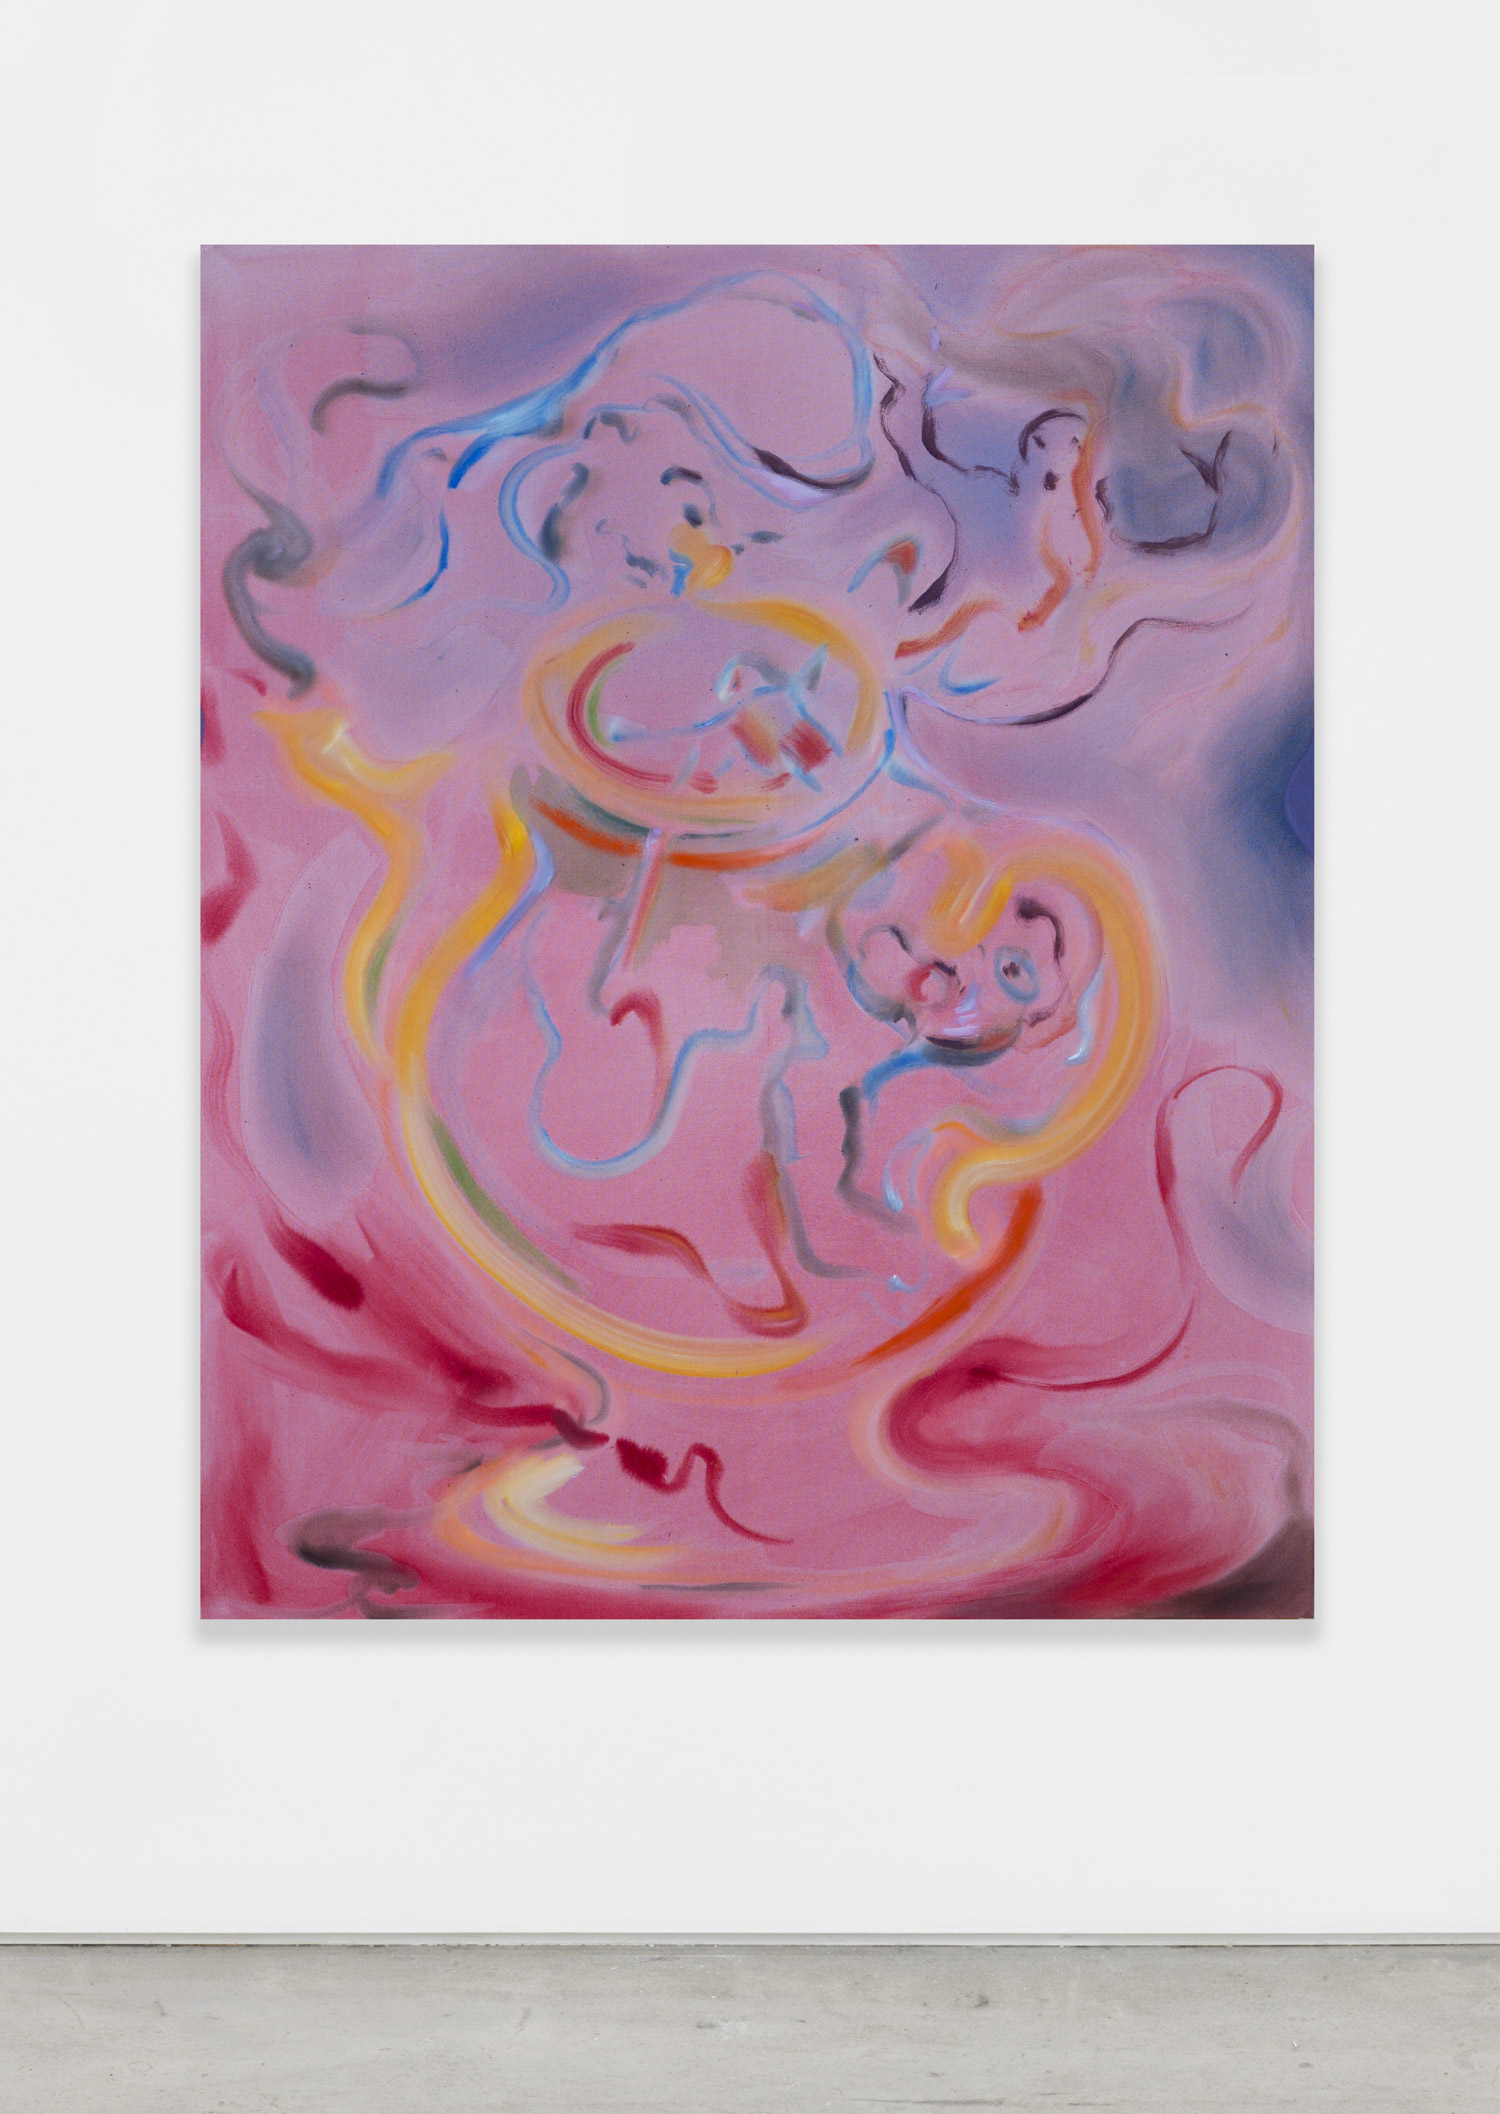 Sophie von Hellermann, Jug, 2018, acrylic on canvas, 62.99h x 51.18w in.